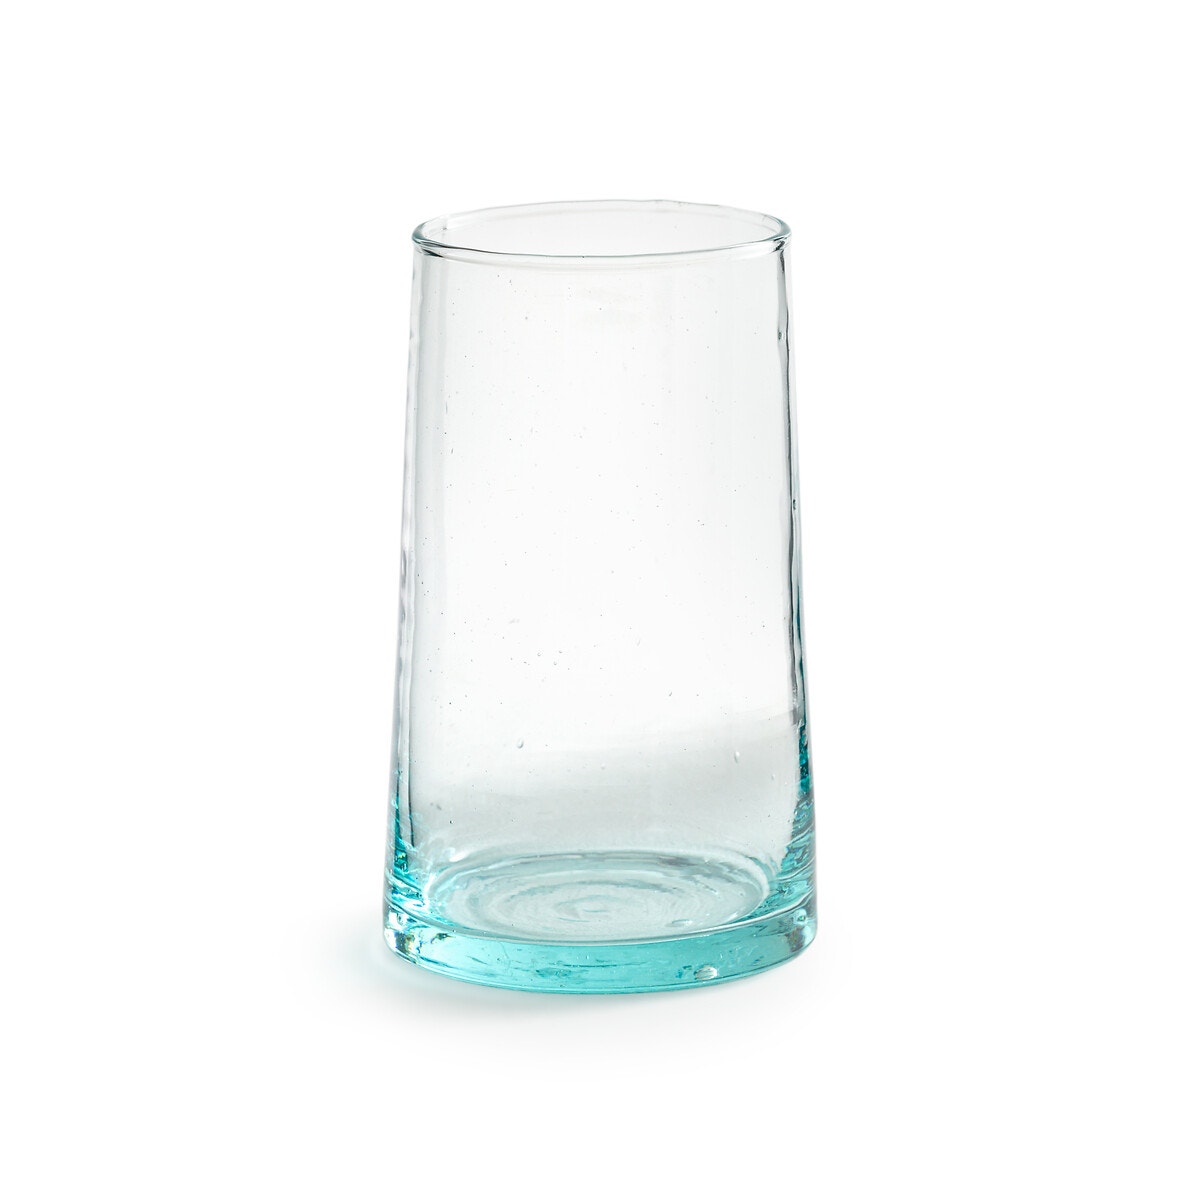 Les 9 meilleurs verres en plastique pour les enfants (2020)